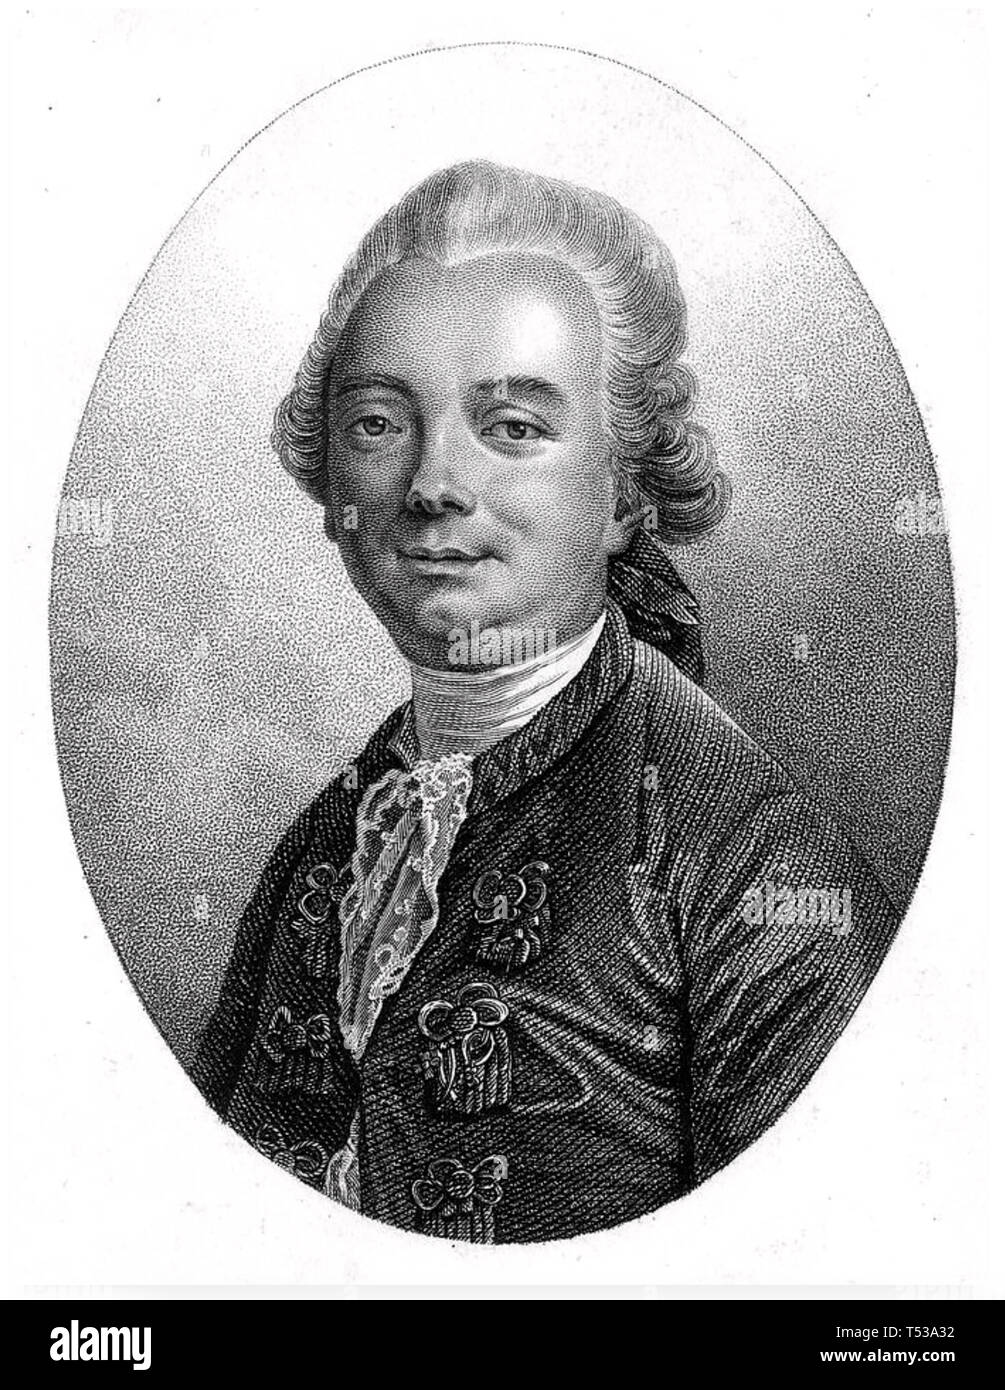 JEAN-FRANÇOIS de la harpe (1739-1803), dramaturge et critique littéraire français Banque D'Images